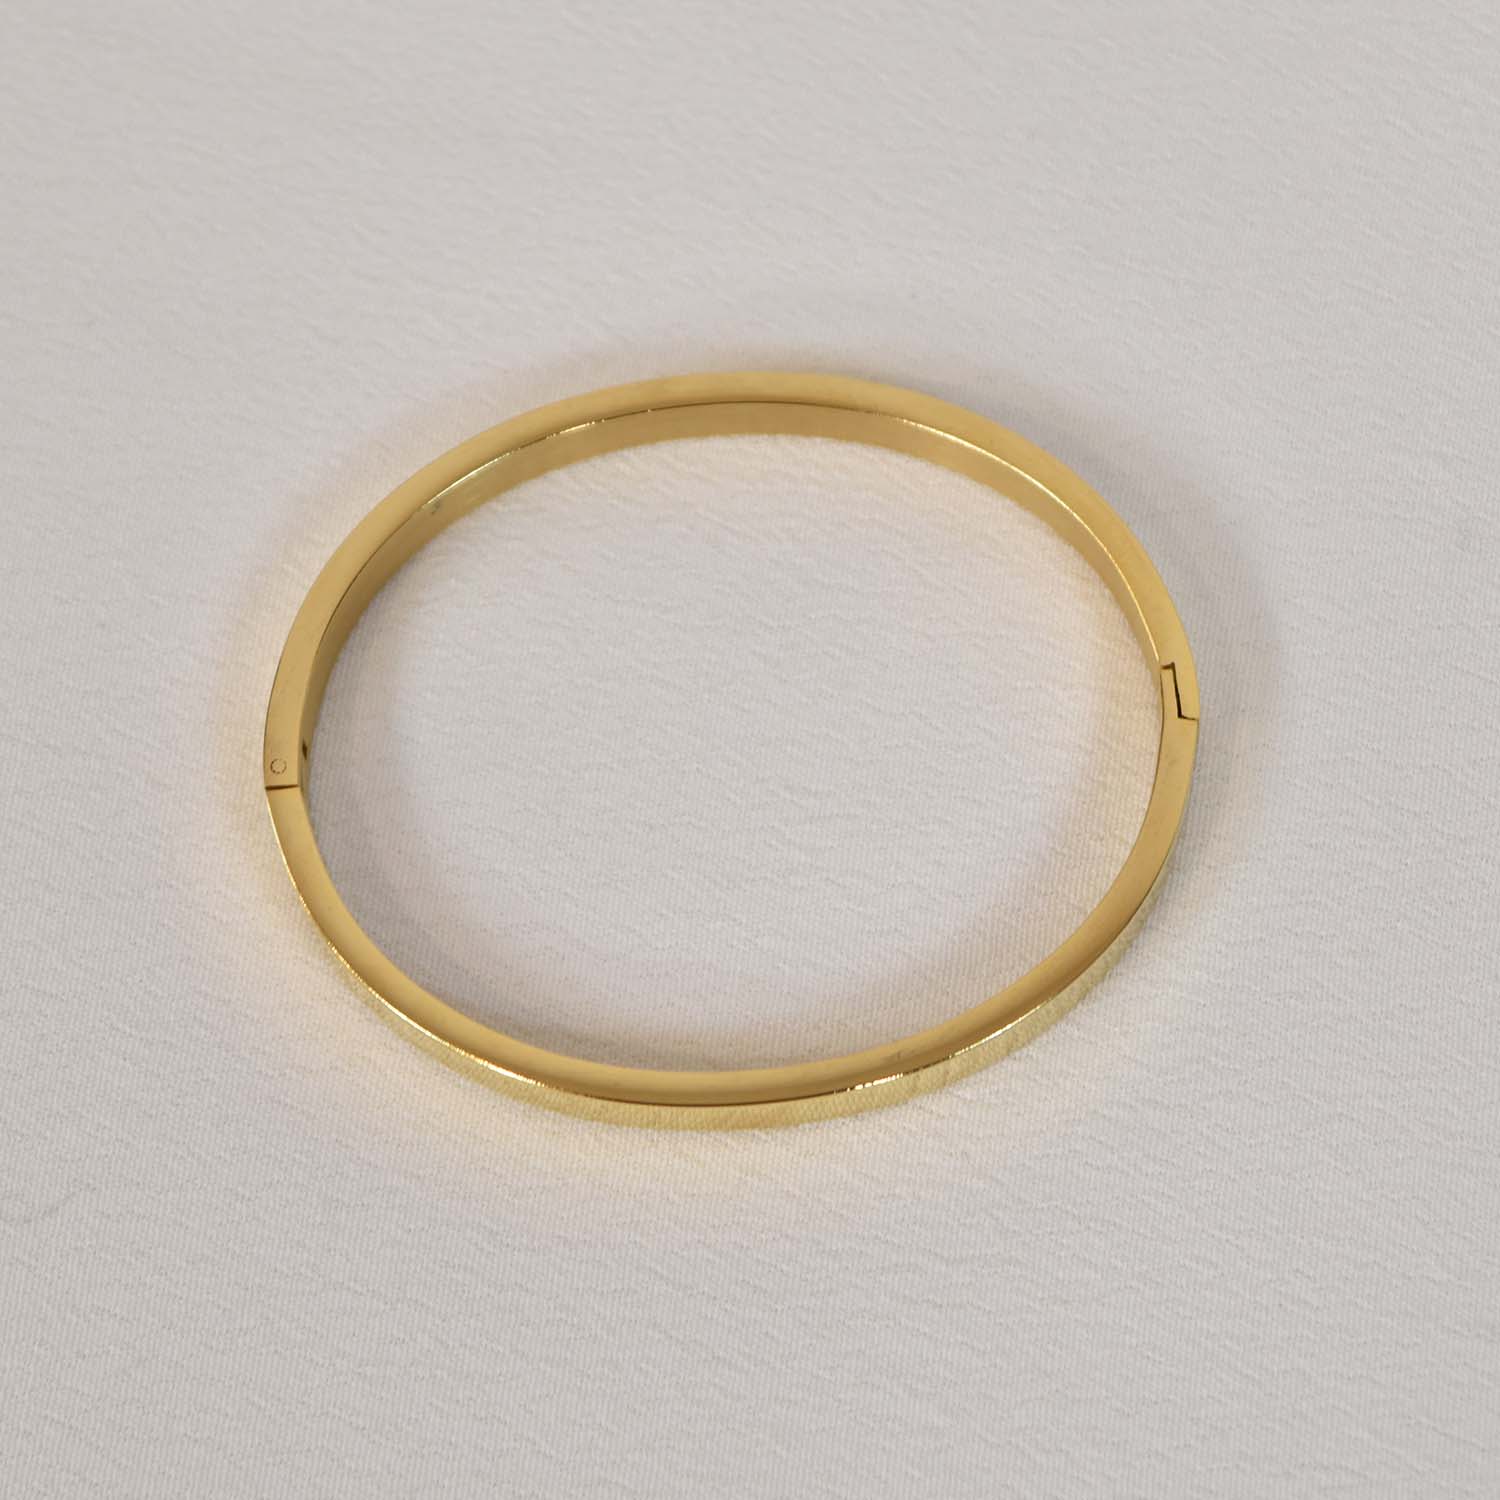 Wide golden bracelet
